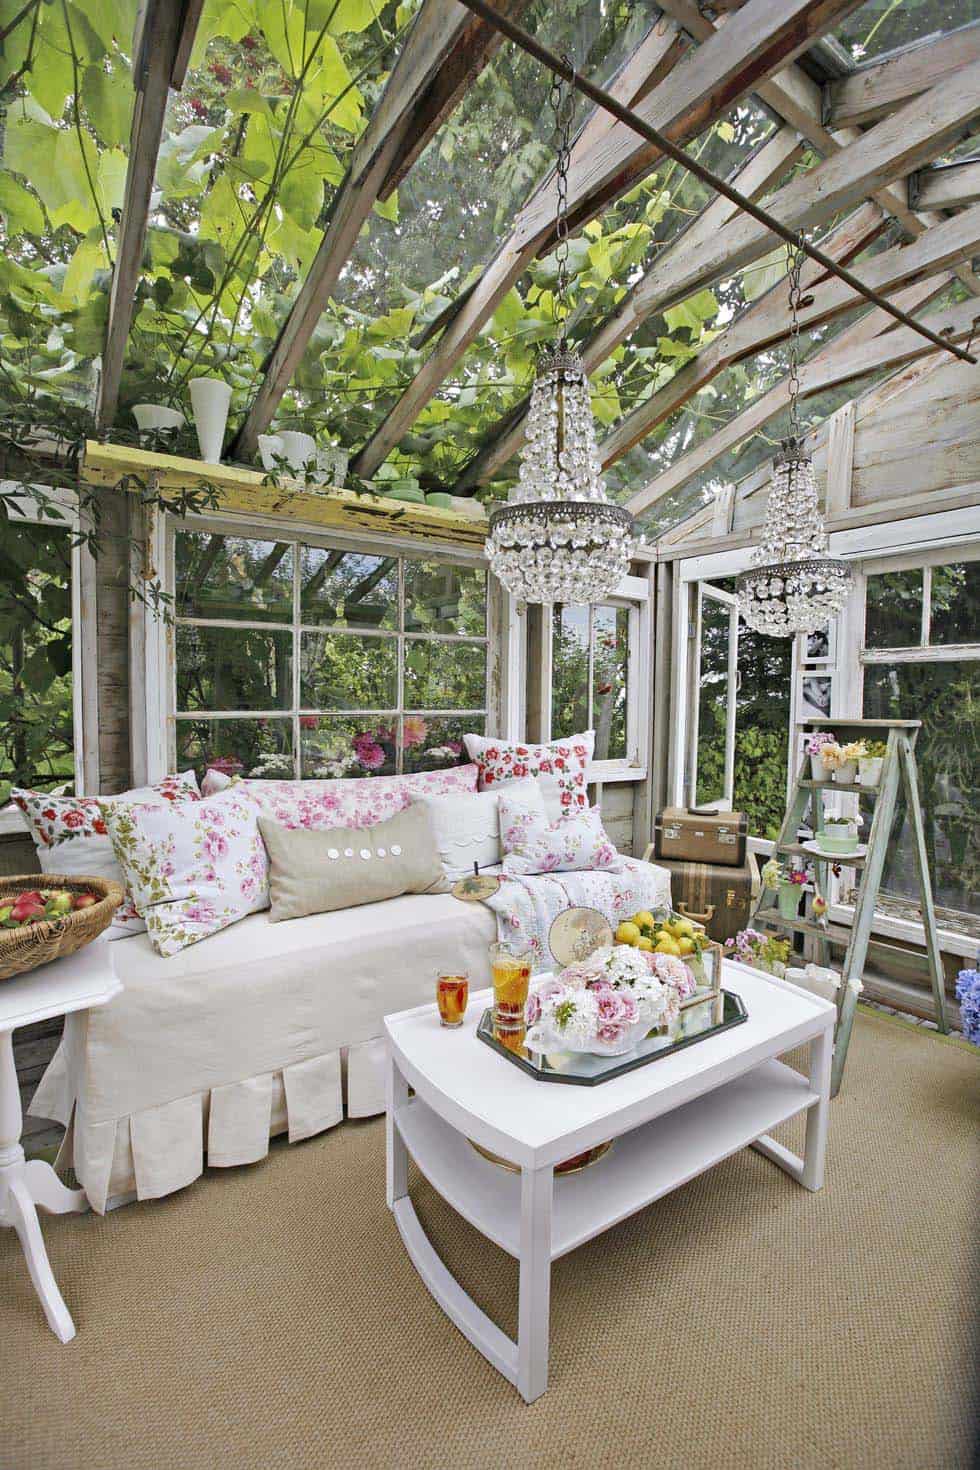 she-shed-greenhouse-backyard-garden-getaway